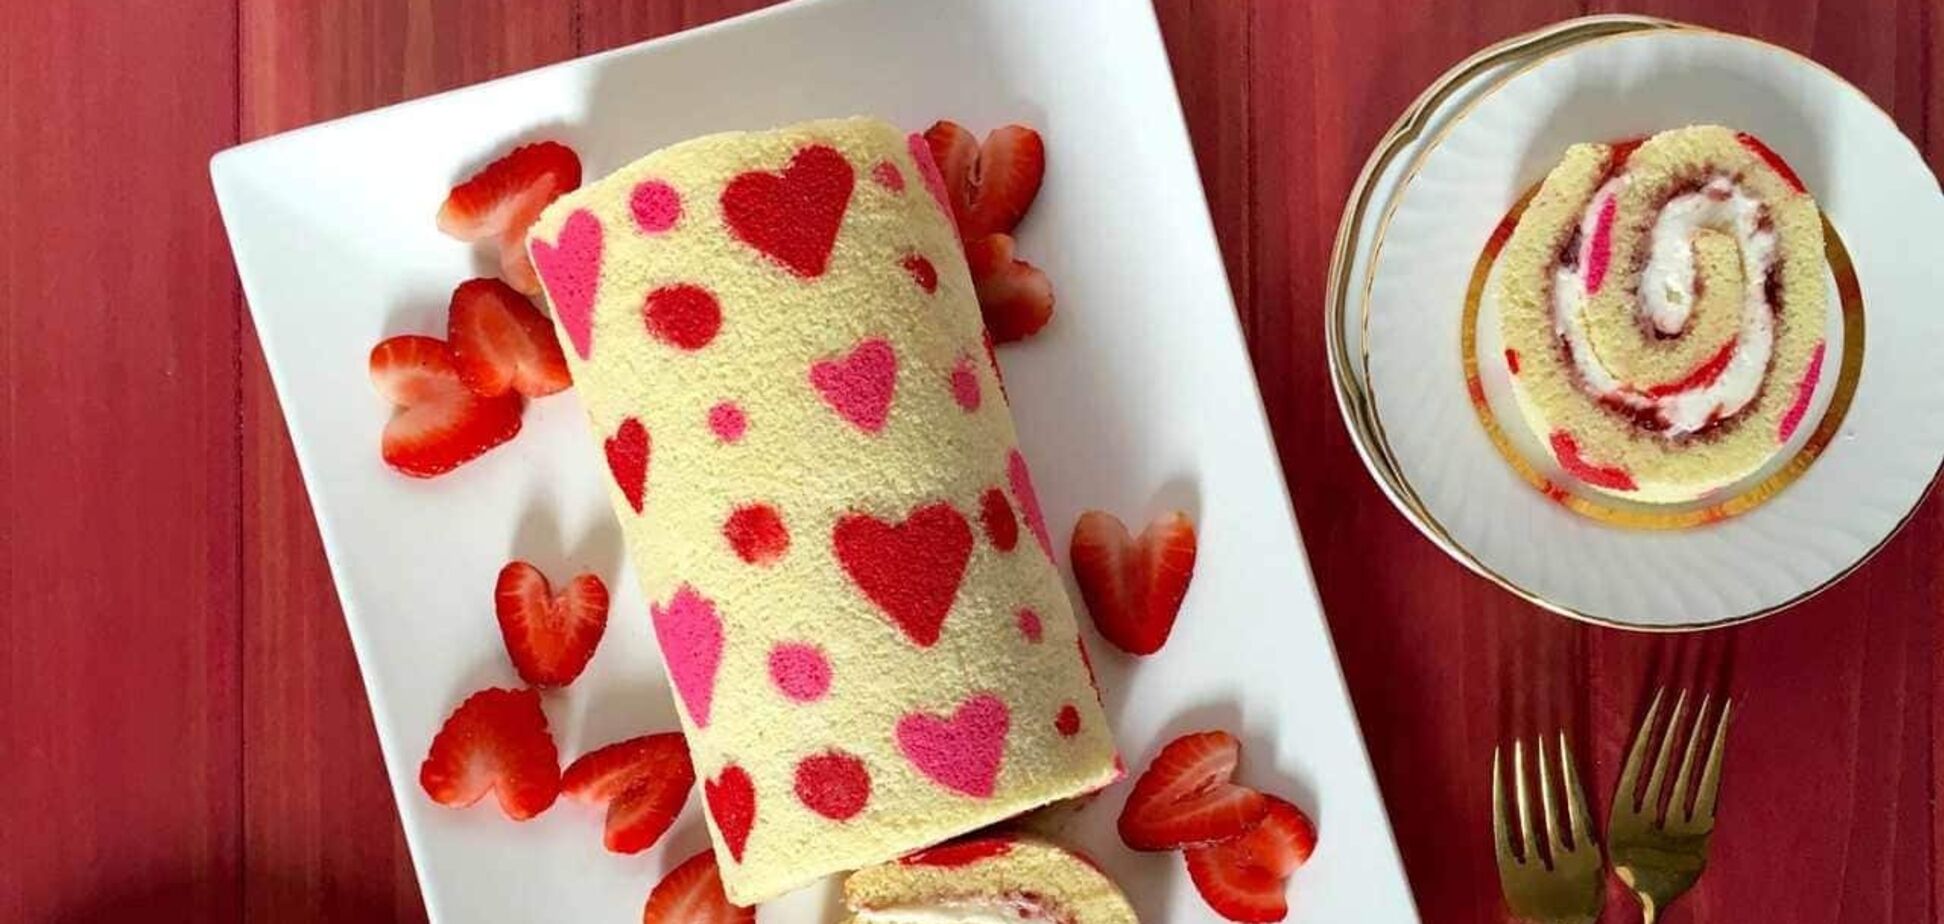 Праздничный рулет 'Валентинка': эффектный десерт на День влюбленных